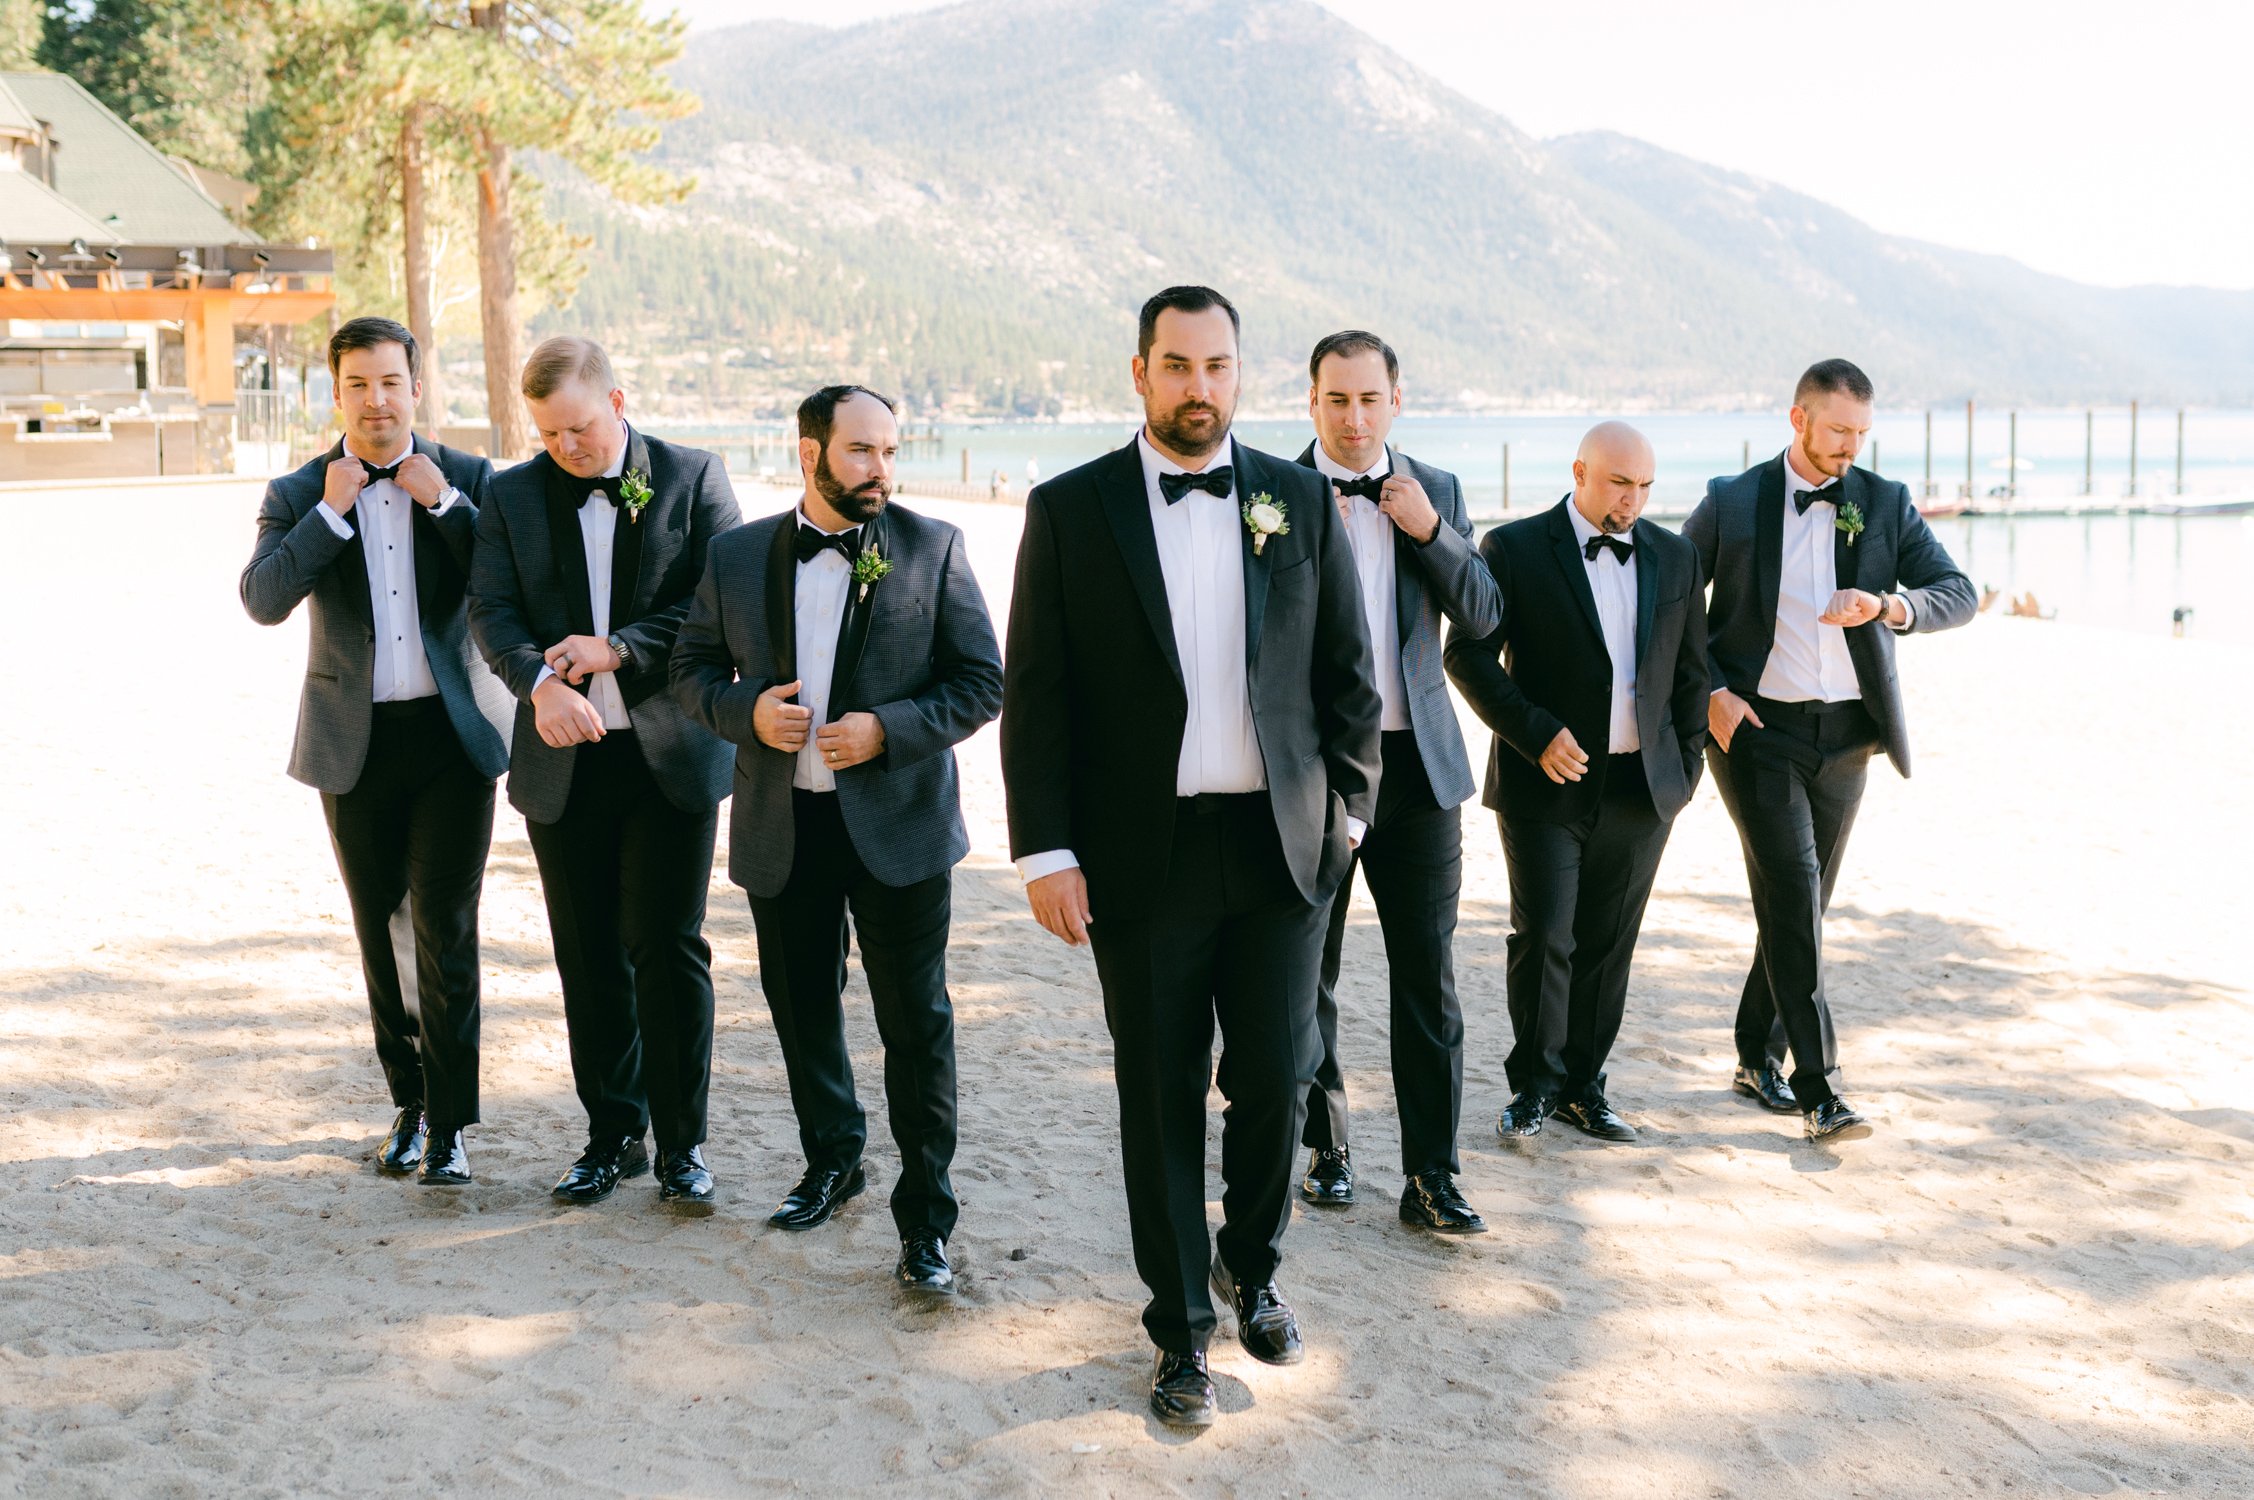 Hyatt Lake Tahoe wedding, photo of groom with groomsmen